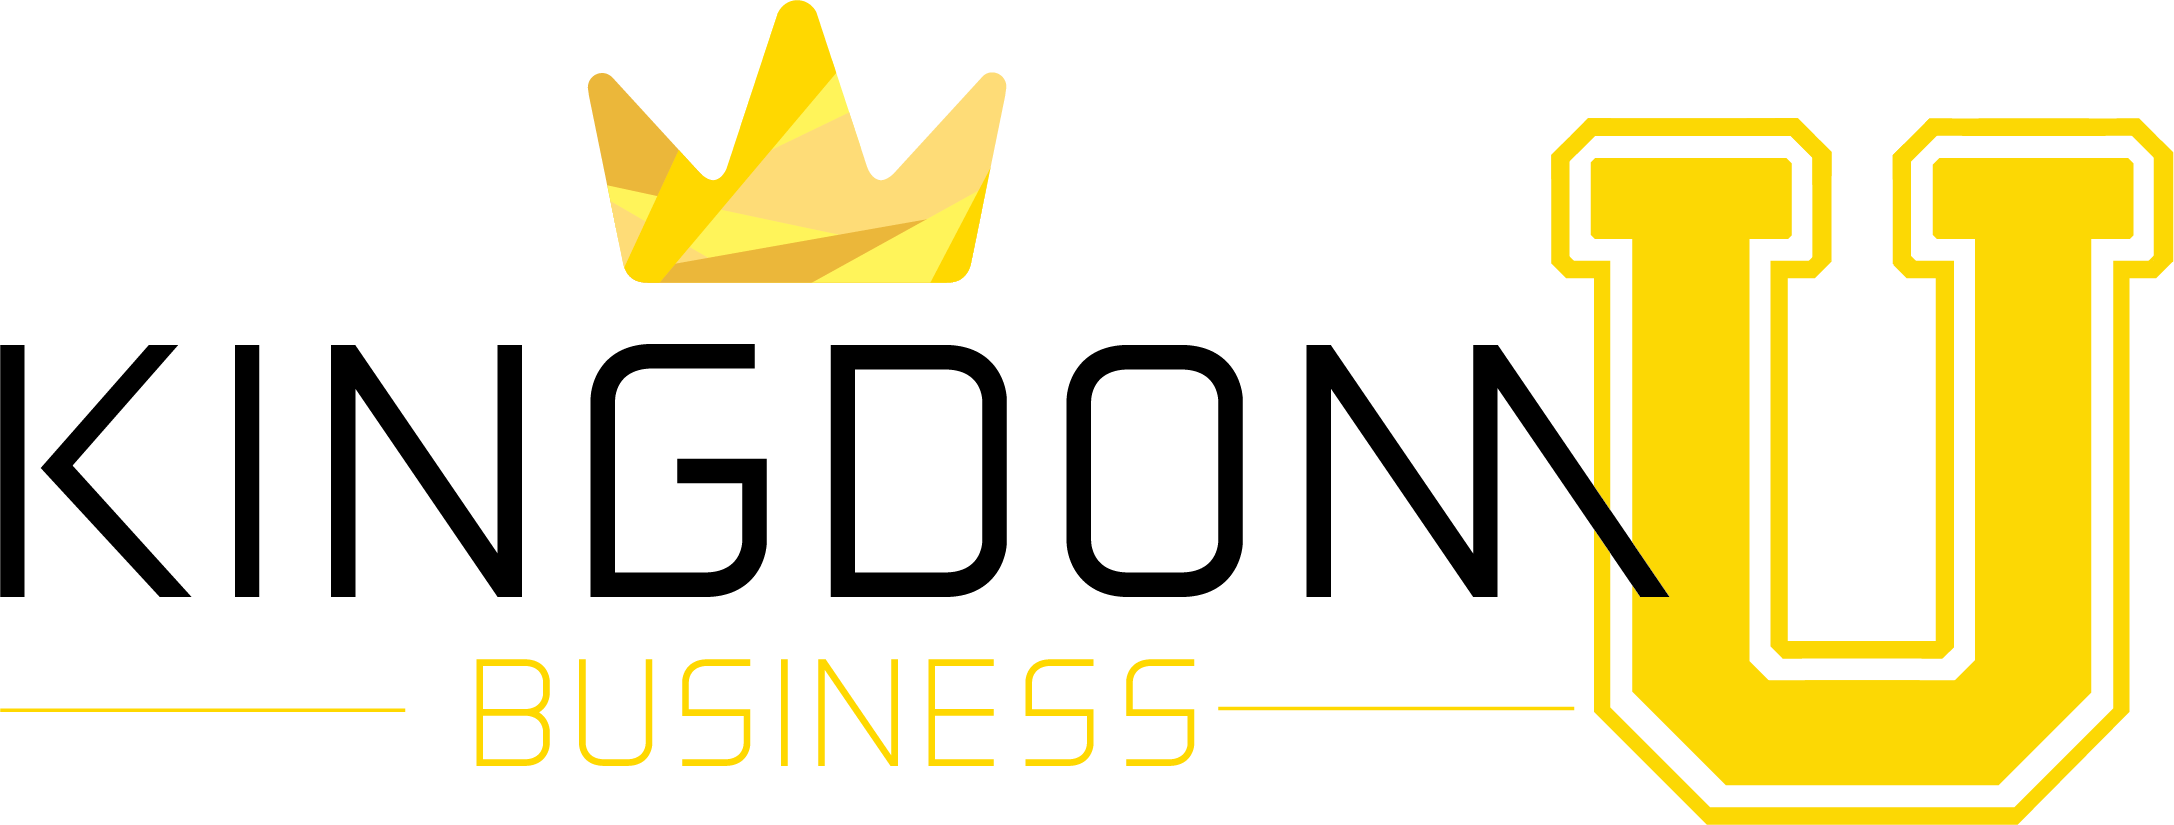 Kingdom Business Academy